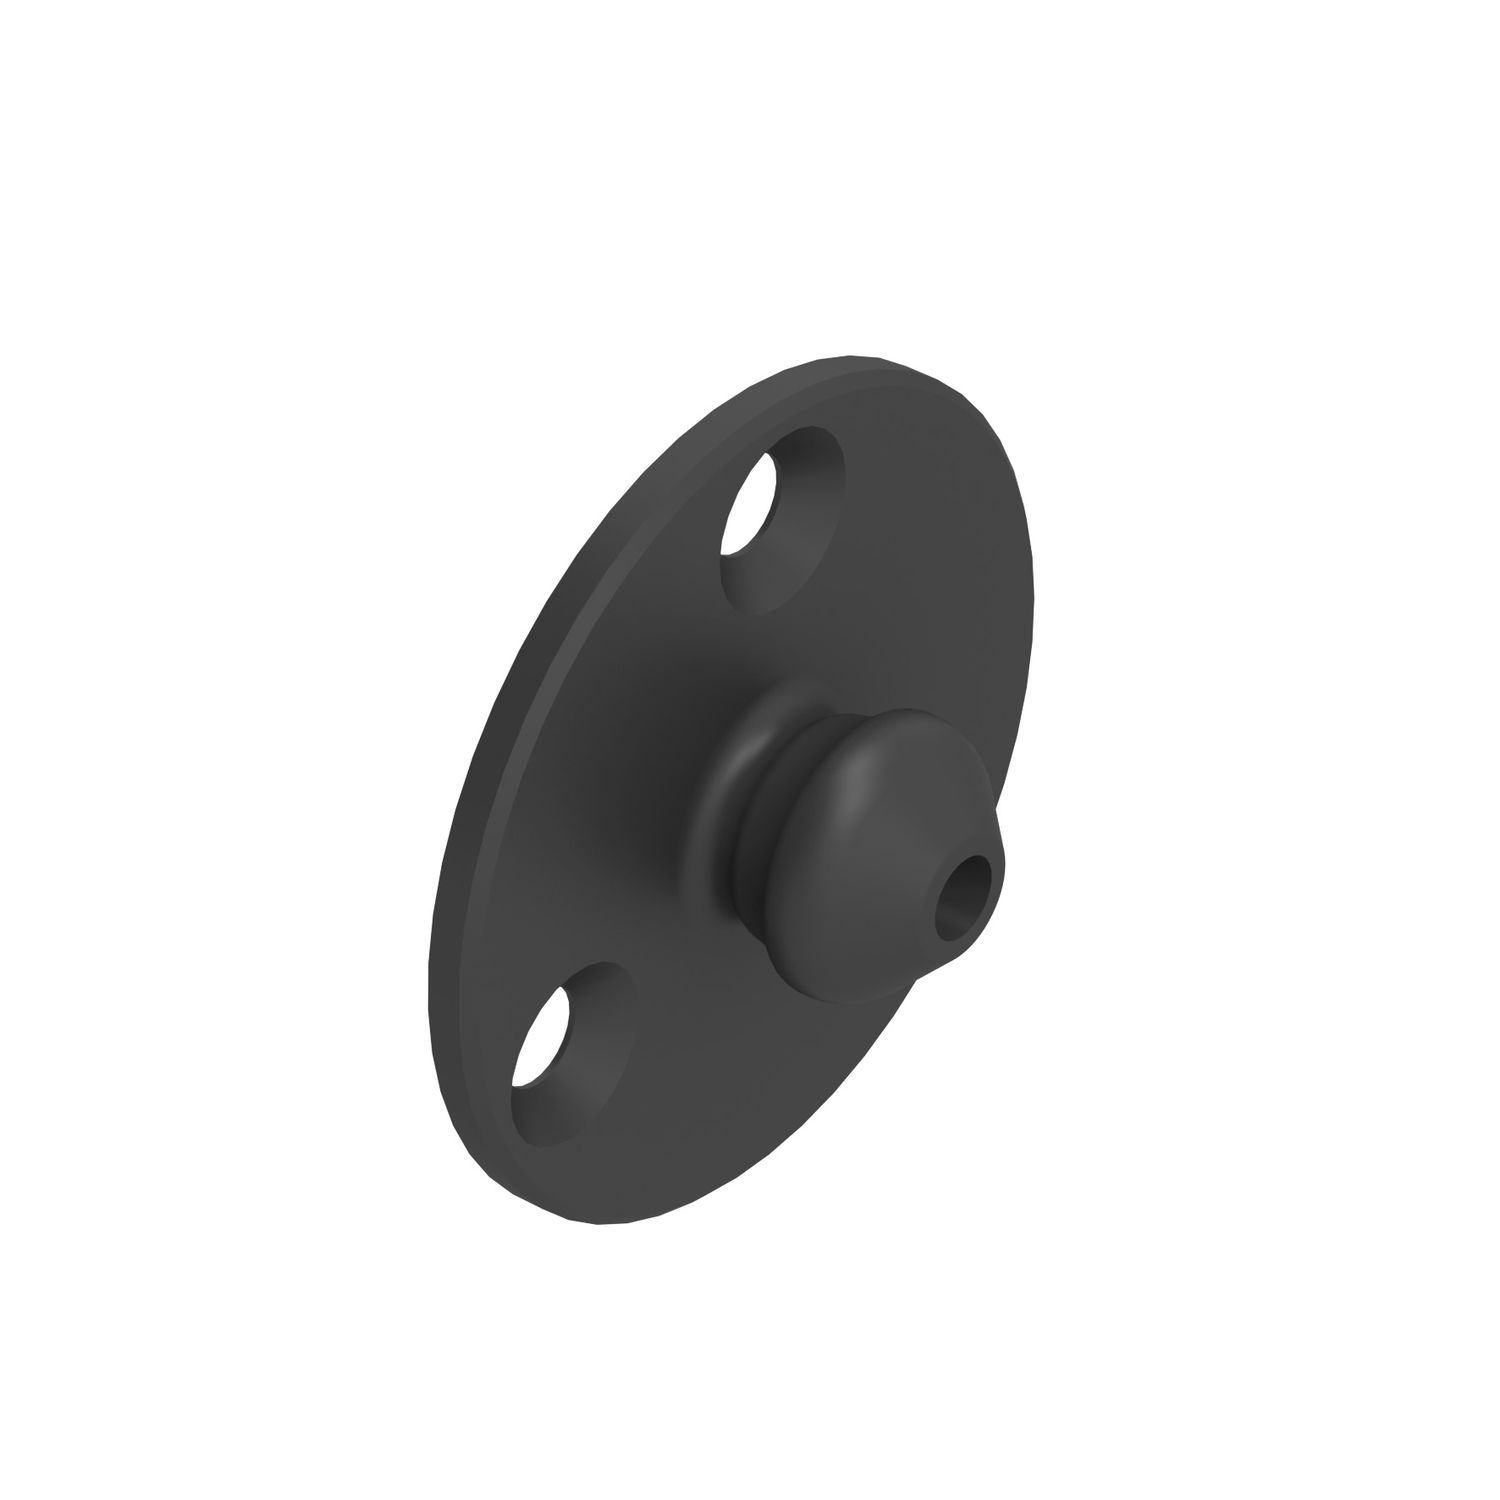 Низкопрофильная накладная клипса типа "папа" усиленная Fastmount LP-SMX для тонких панелей чёрная